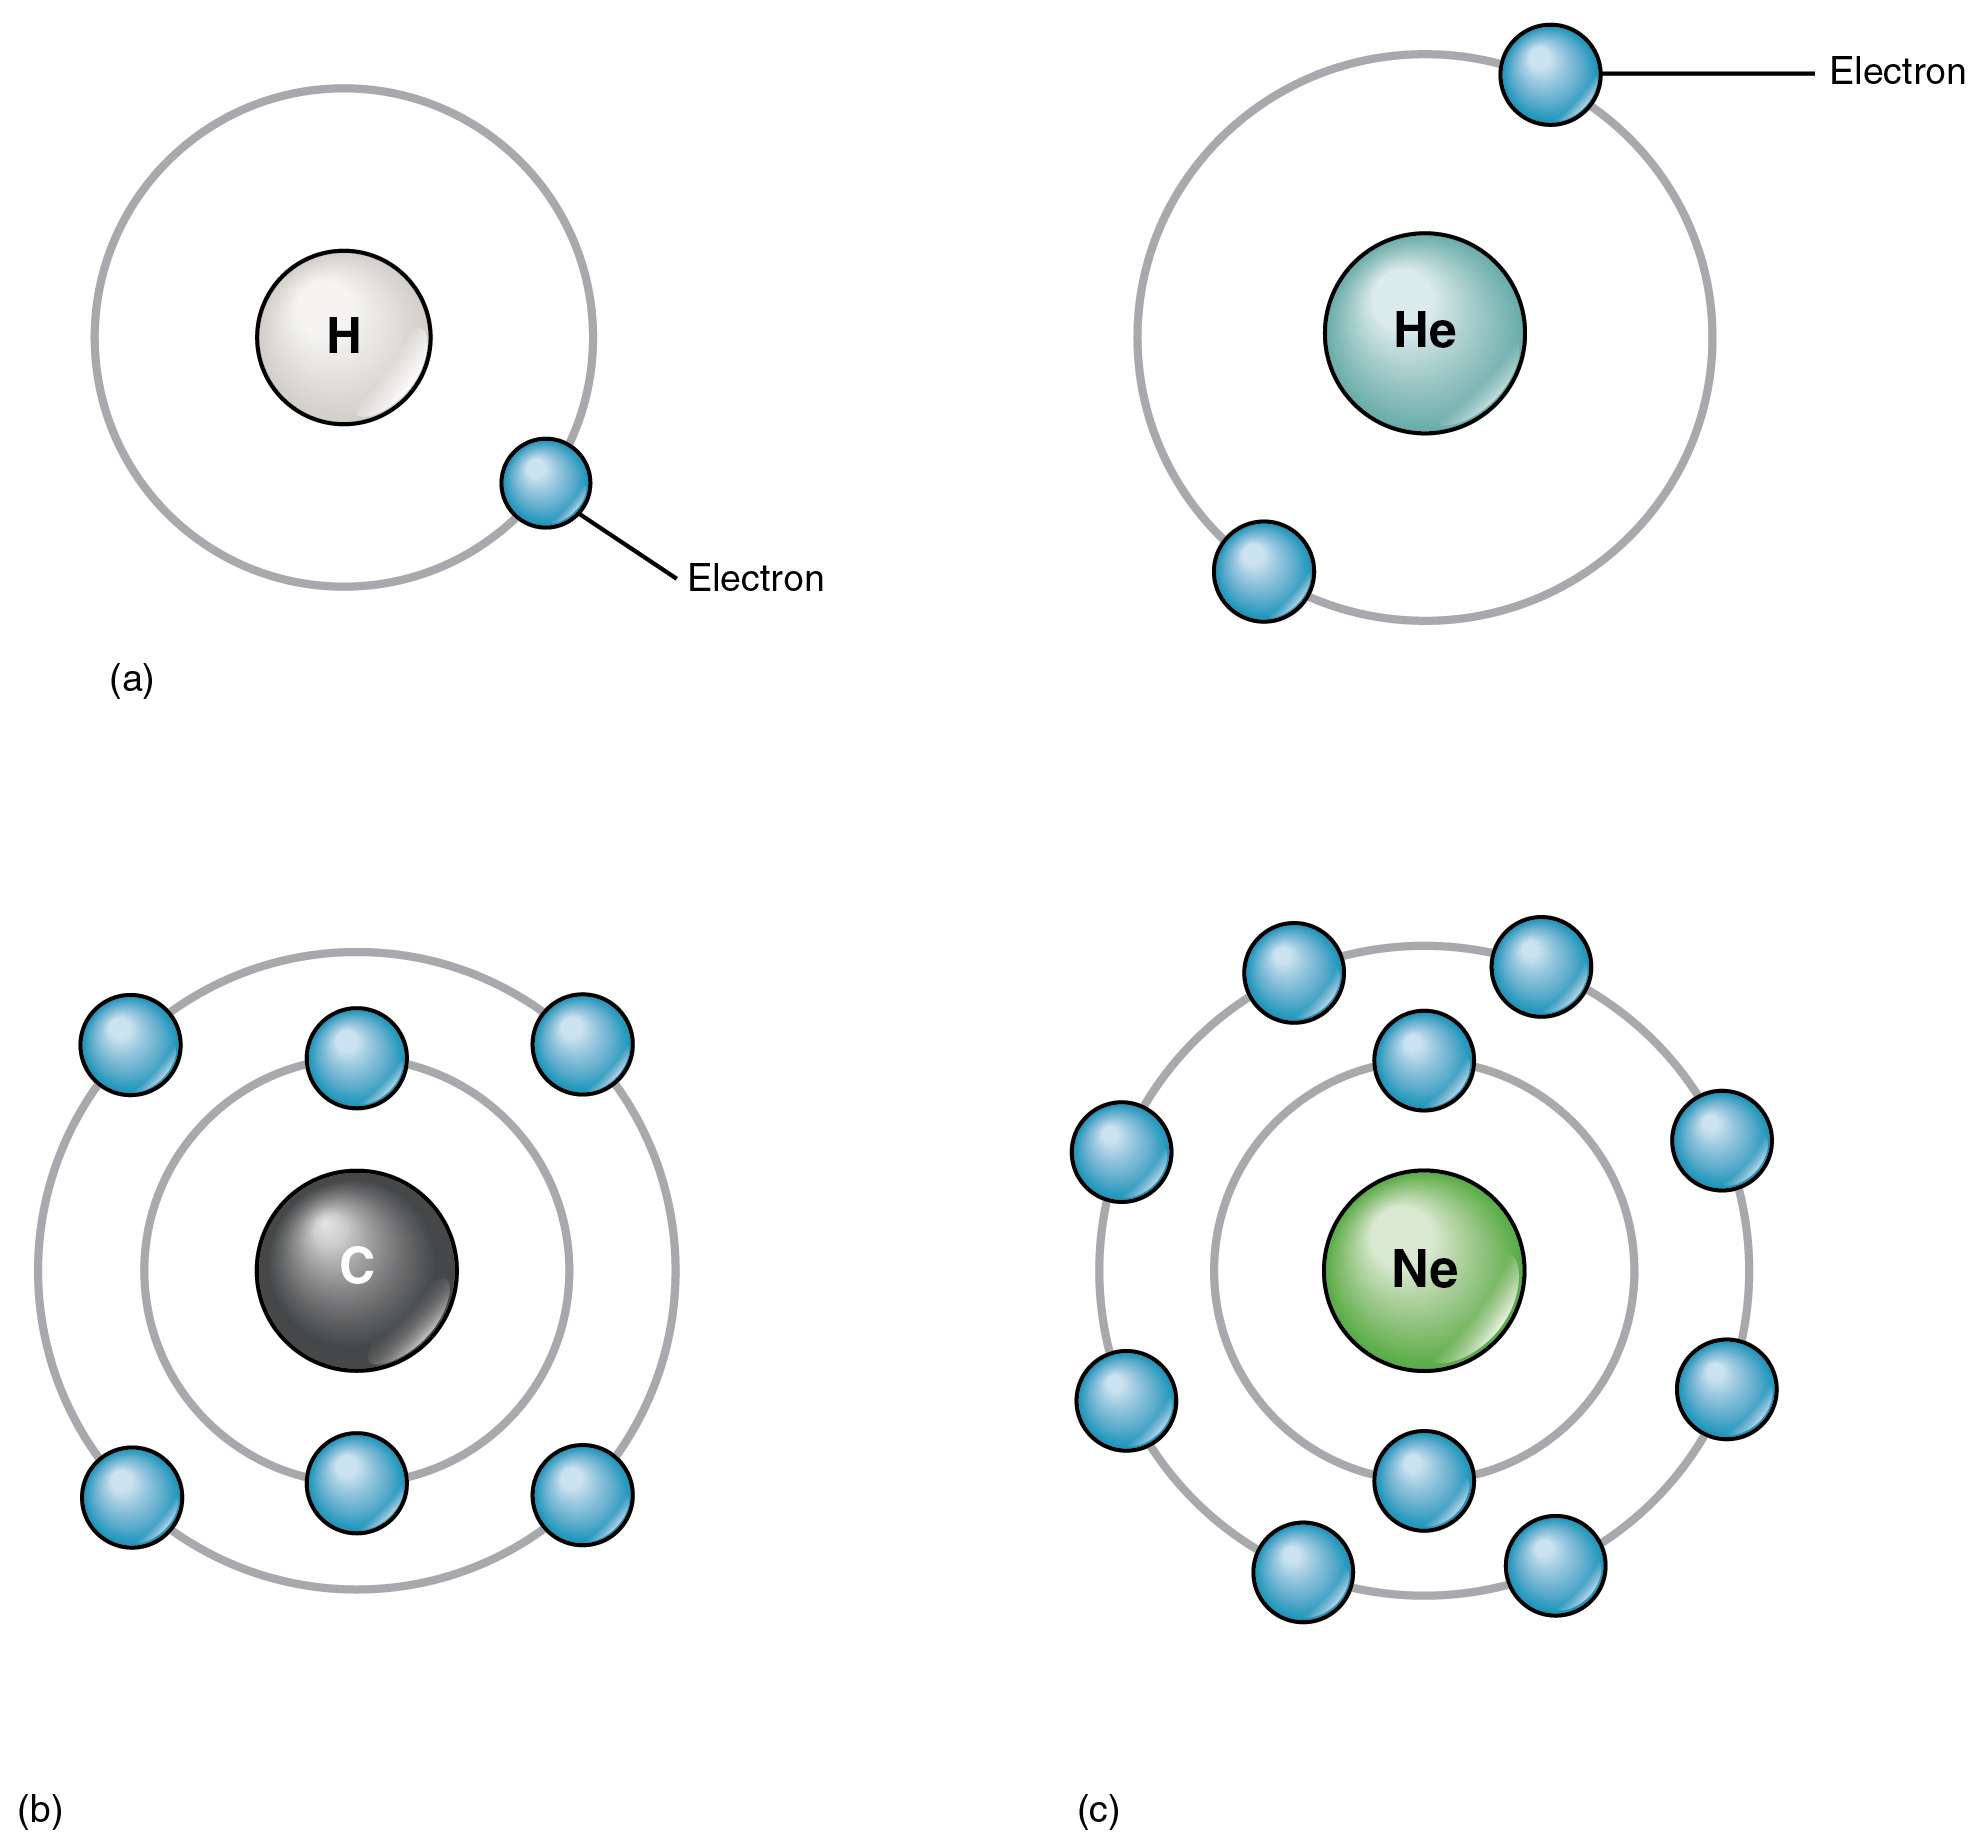 Esta figura de quatro painéis mostra quatro átomos diferentes com os elétrons em órbita ao redor do núcleo.